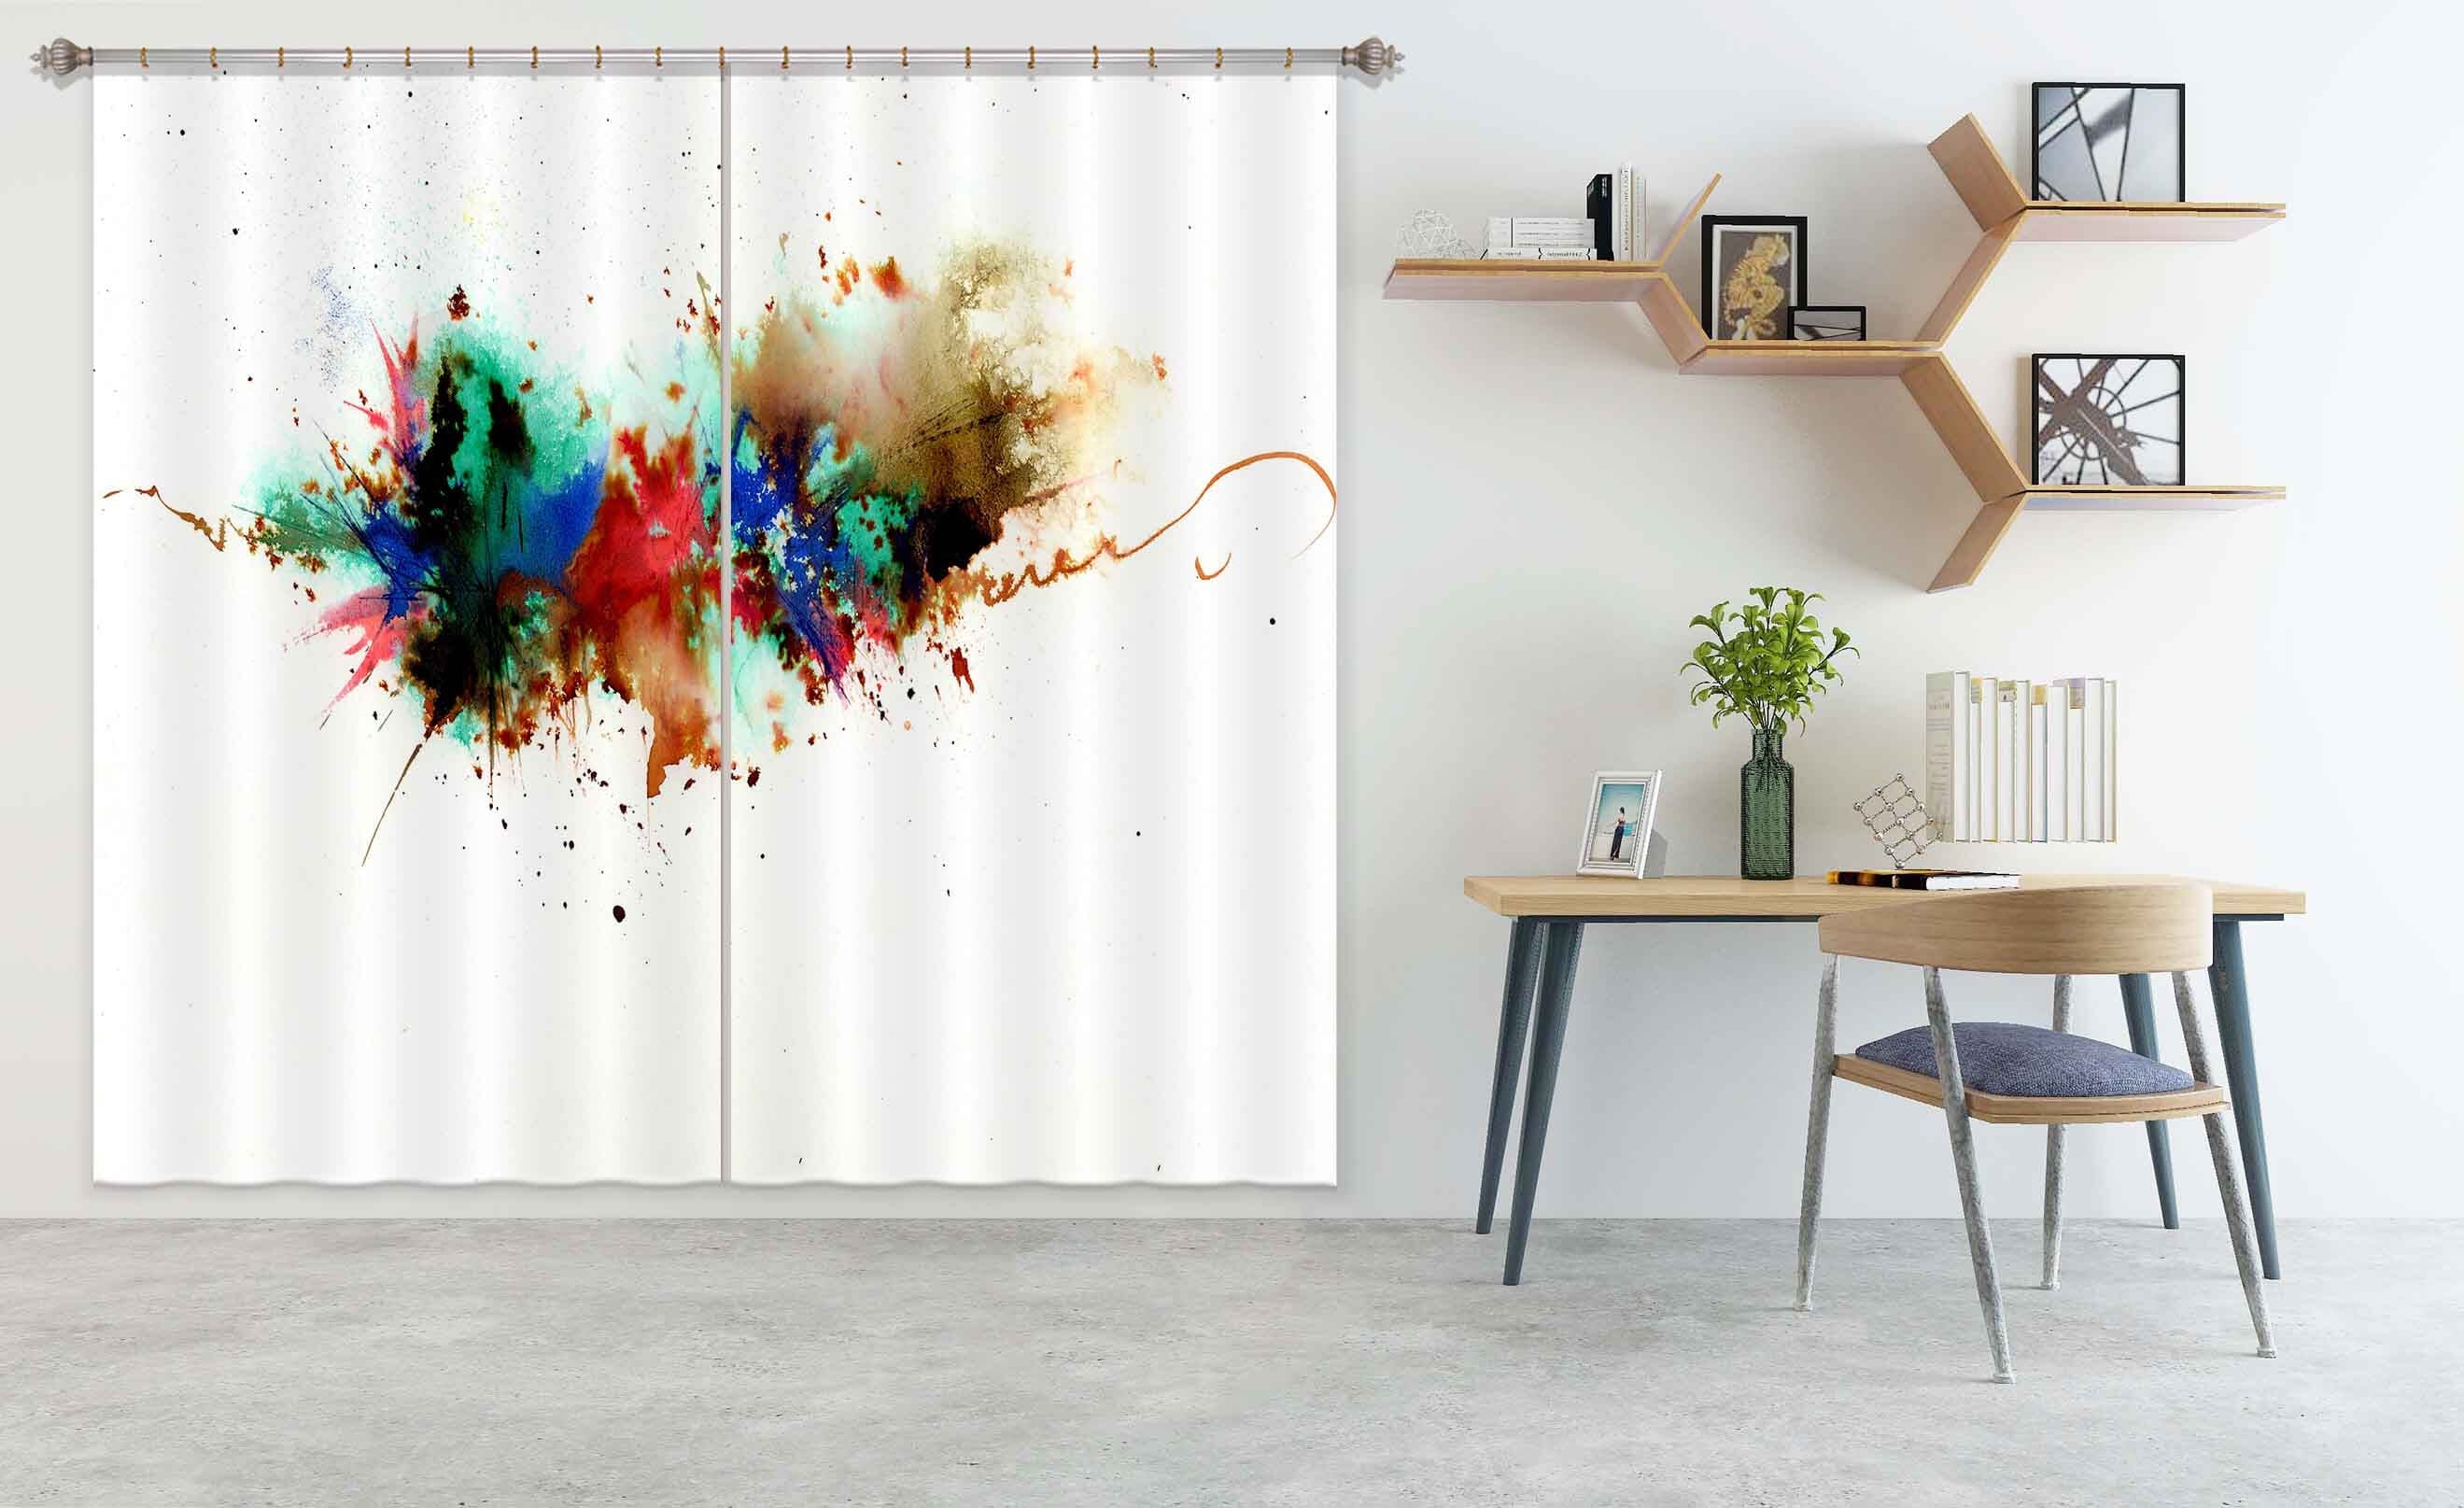 3D Color Splash 009 Anne Farrall Doyle Curtain Curtains Drapes Curtains AJ Creativity Home 